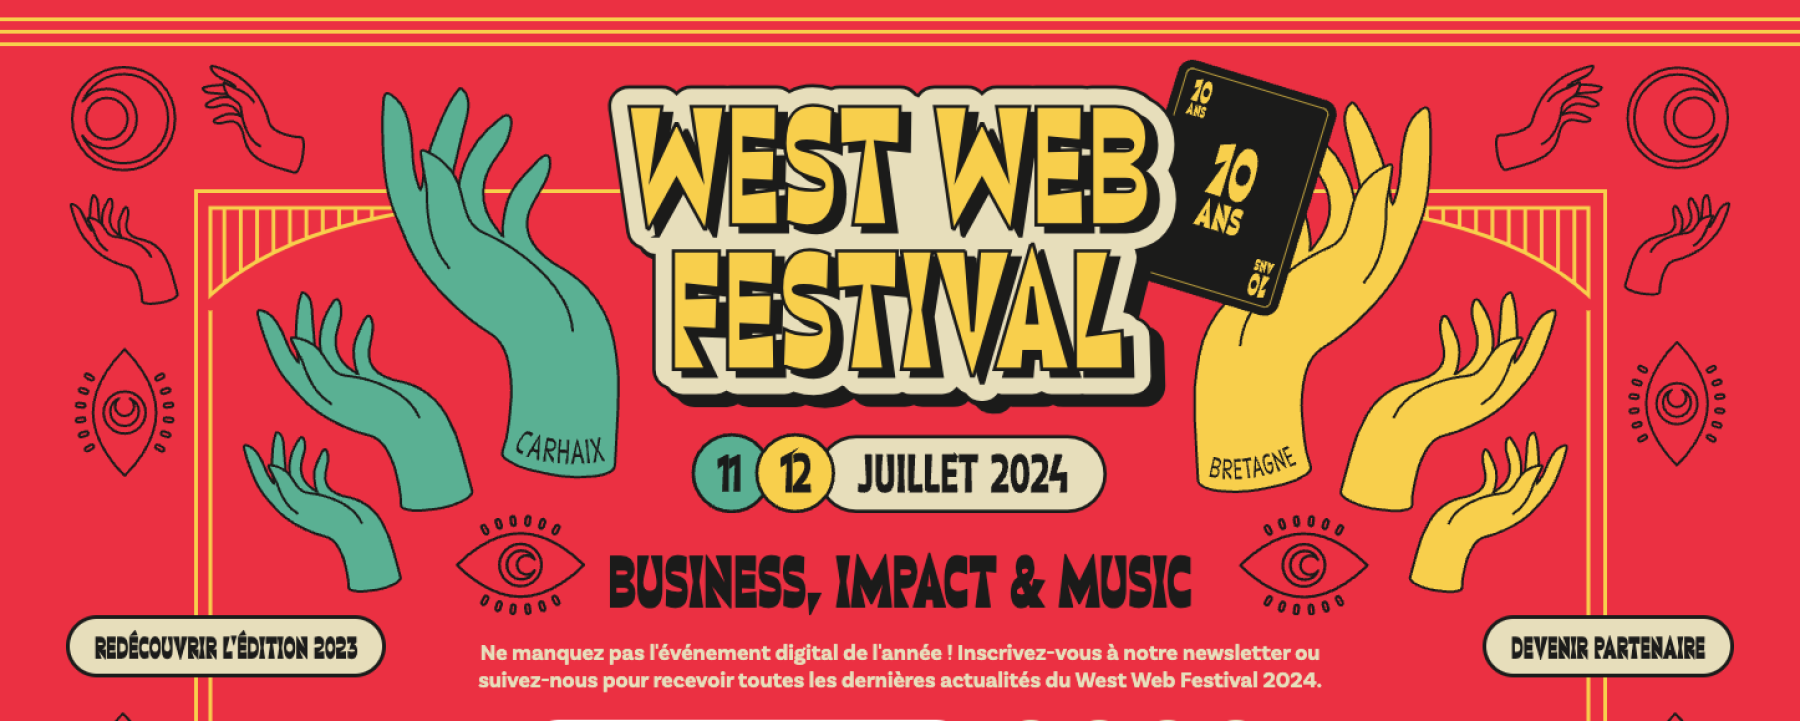 West Web Festival 2024